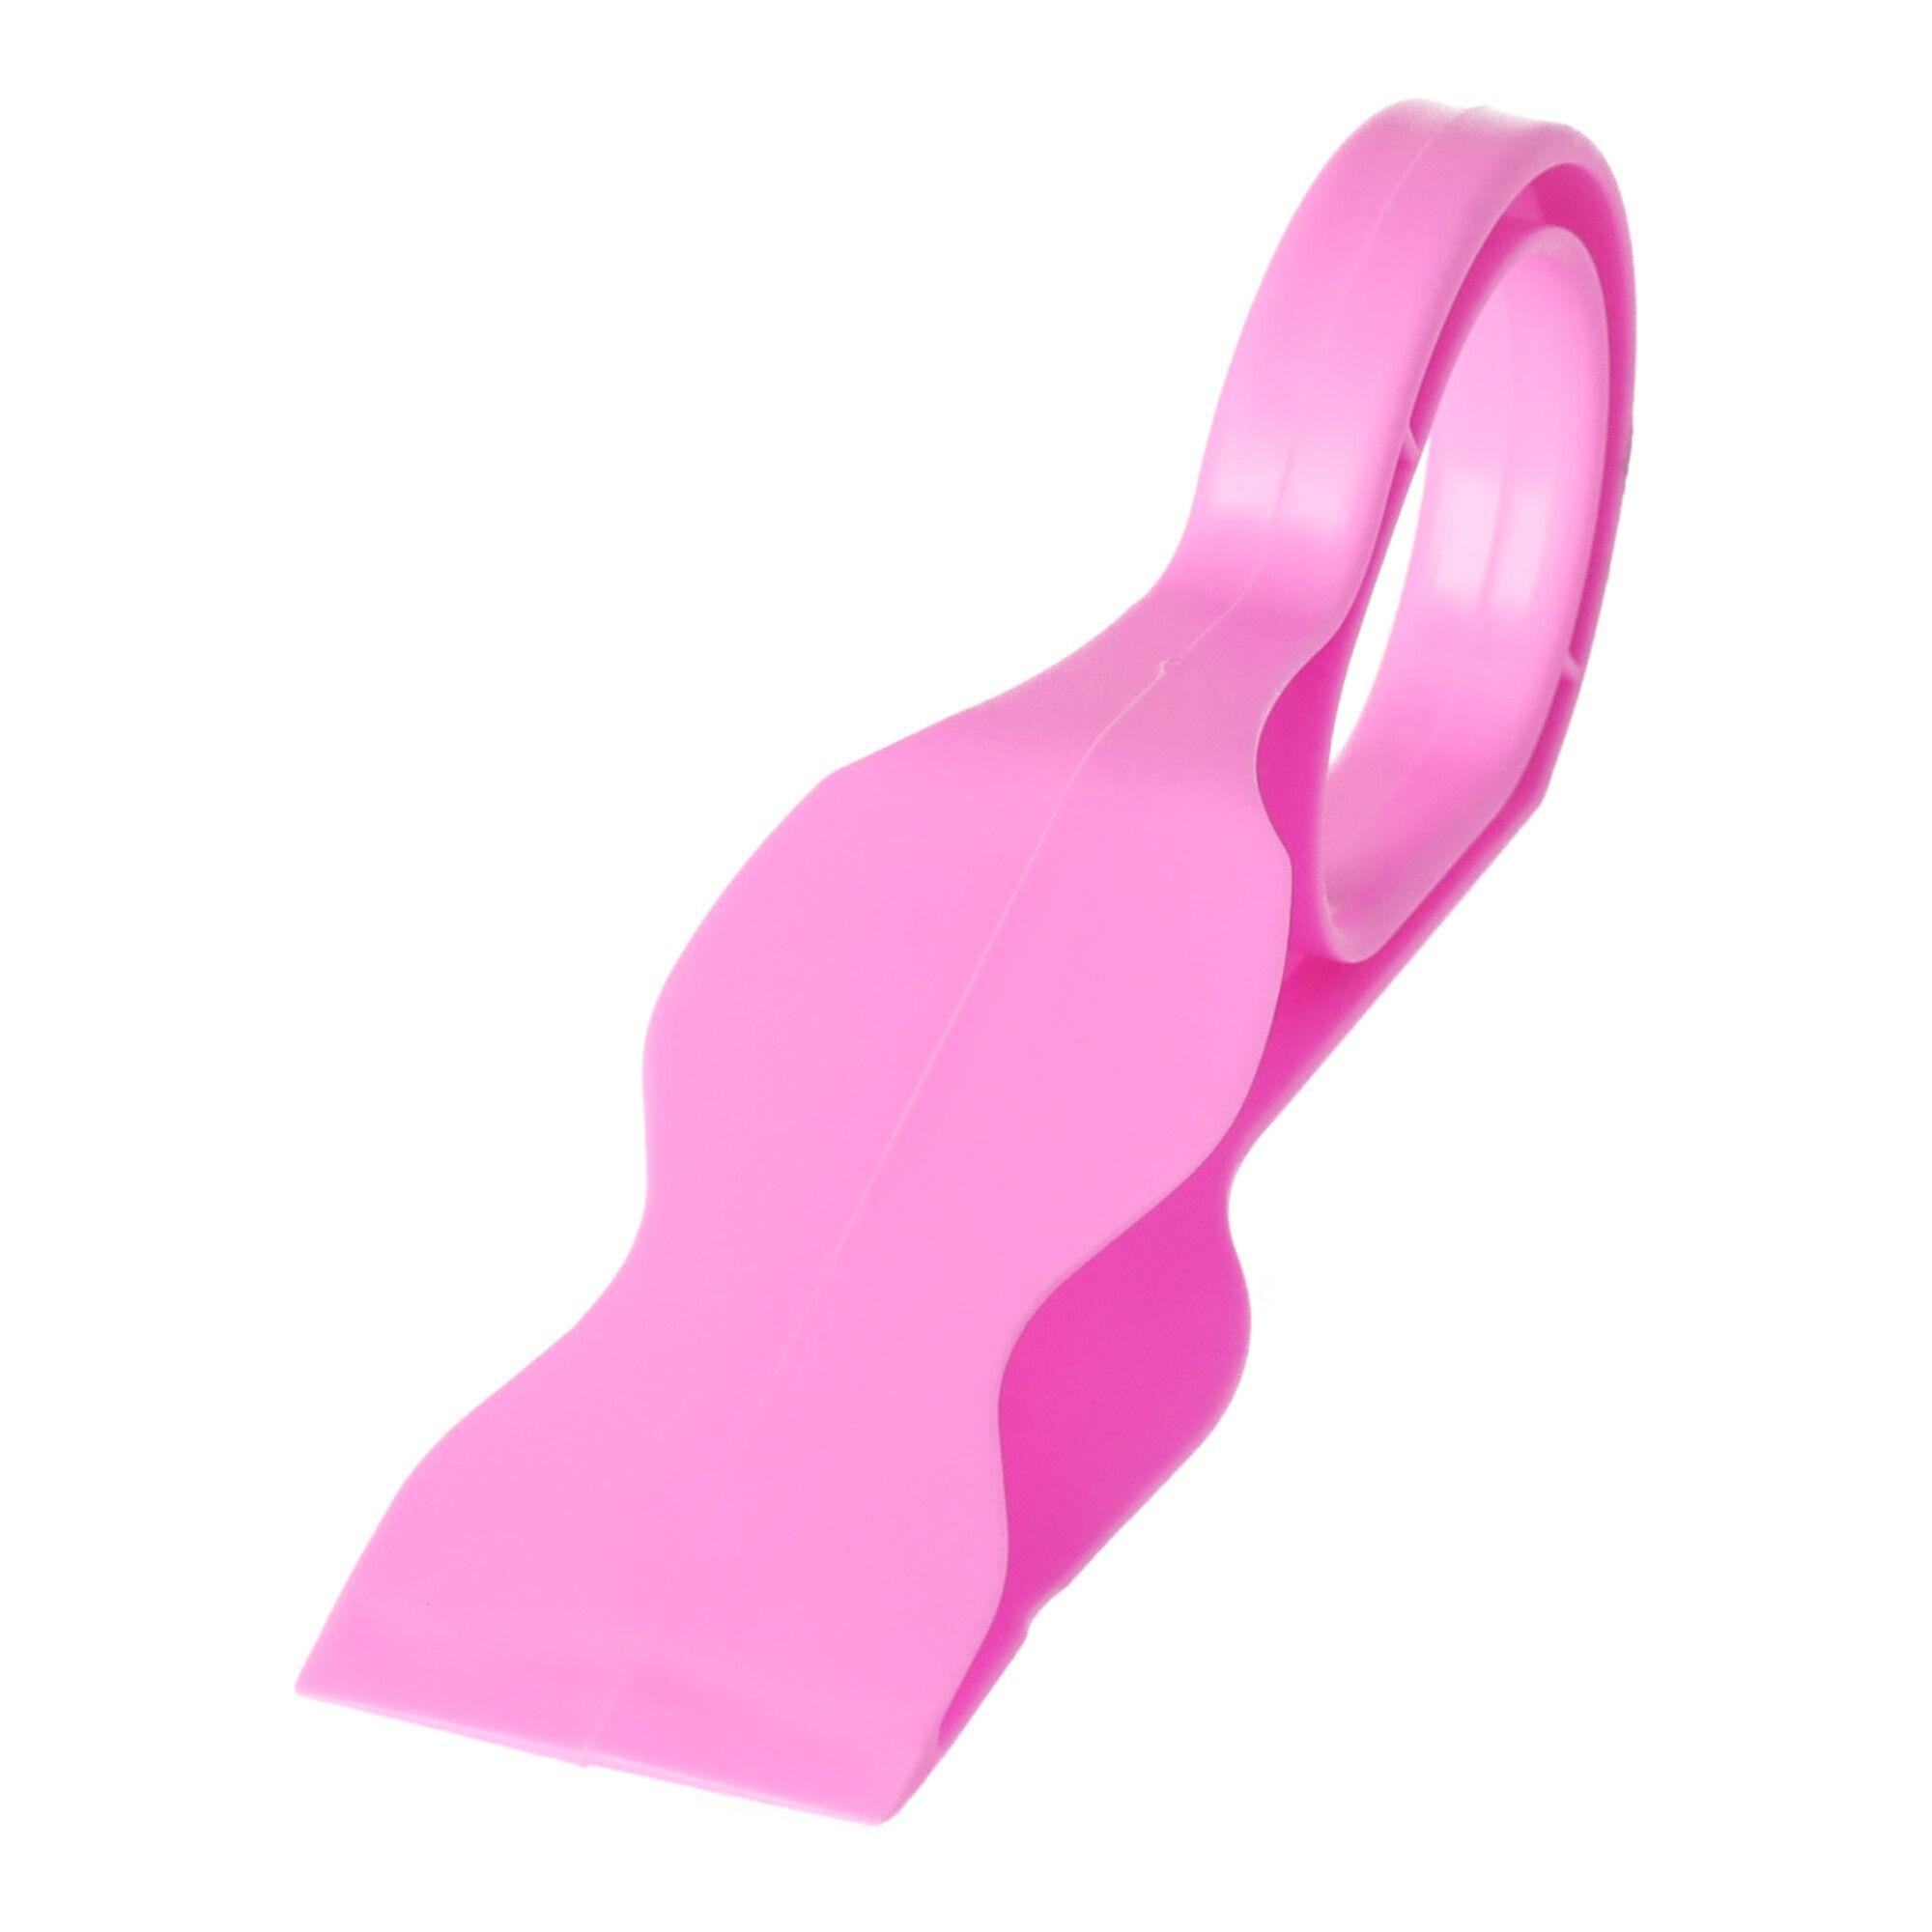 Mattress lifter - pink